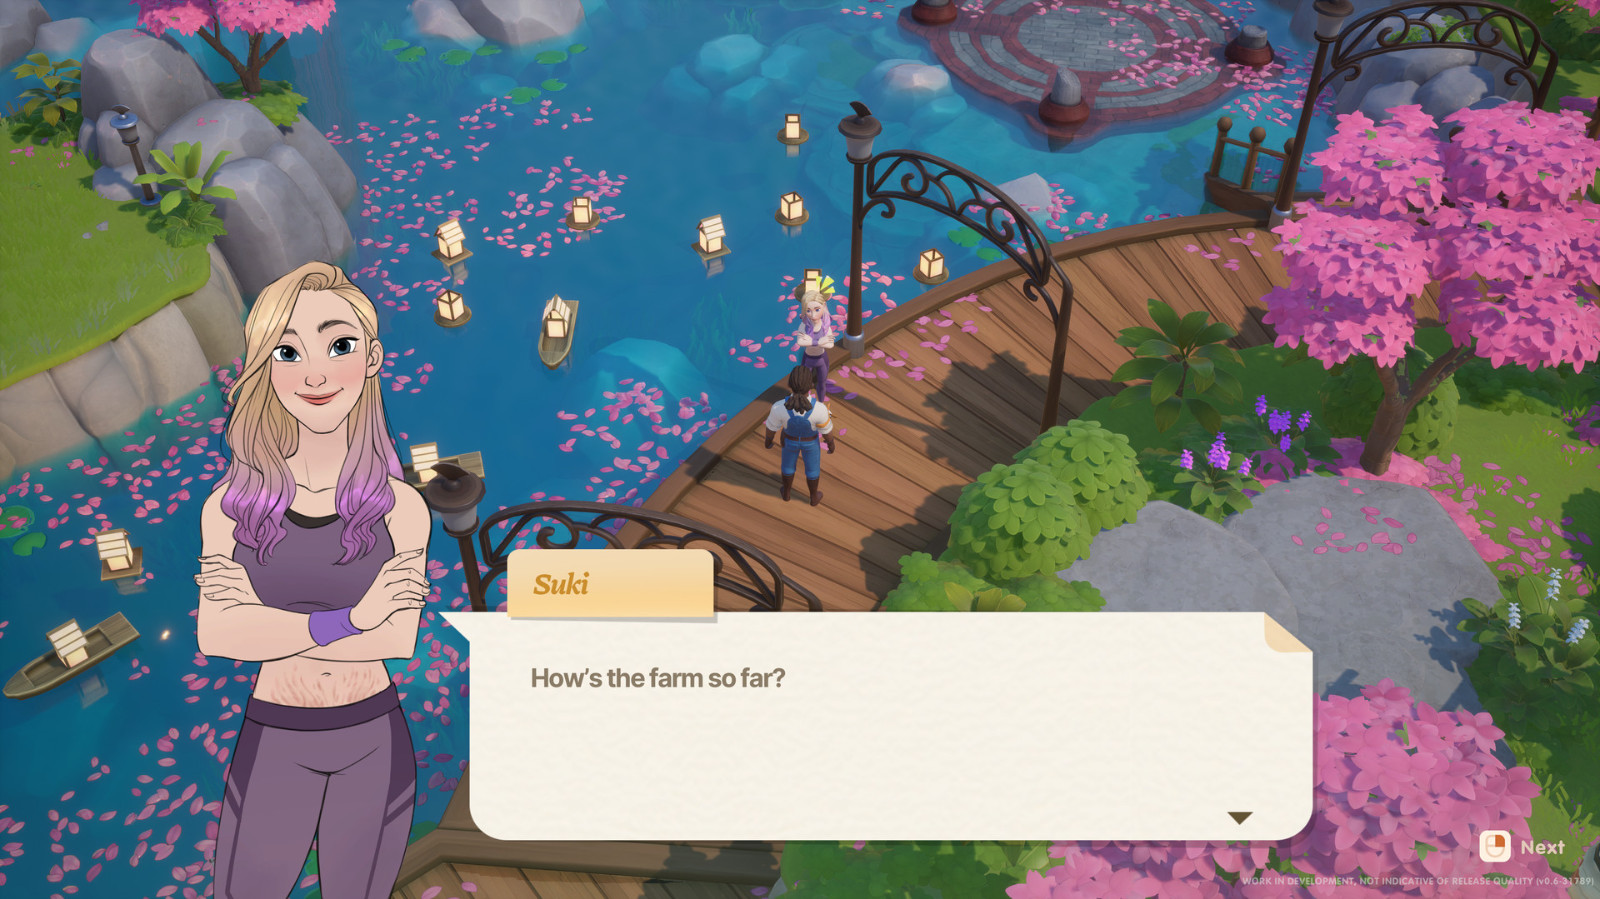 农场休闲模拟游戏《珊瑚岛》公布全新官方封面及发行商预告